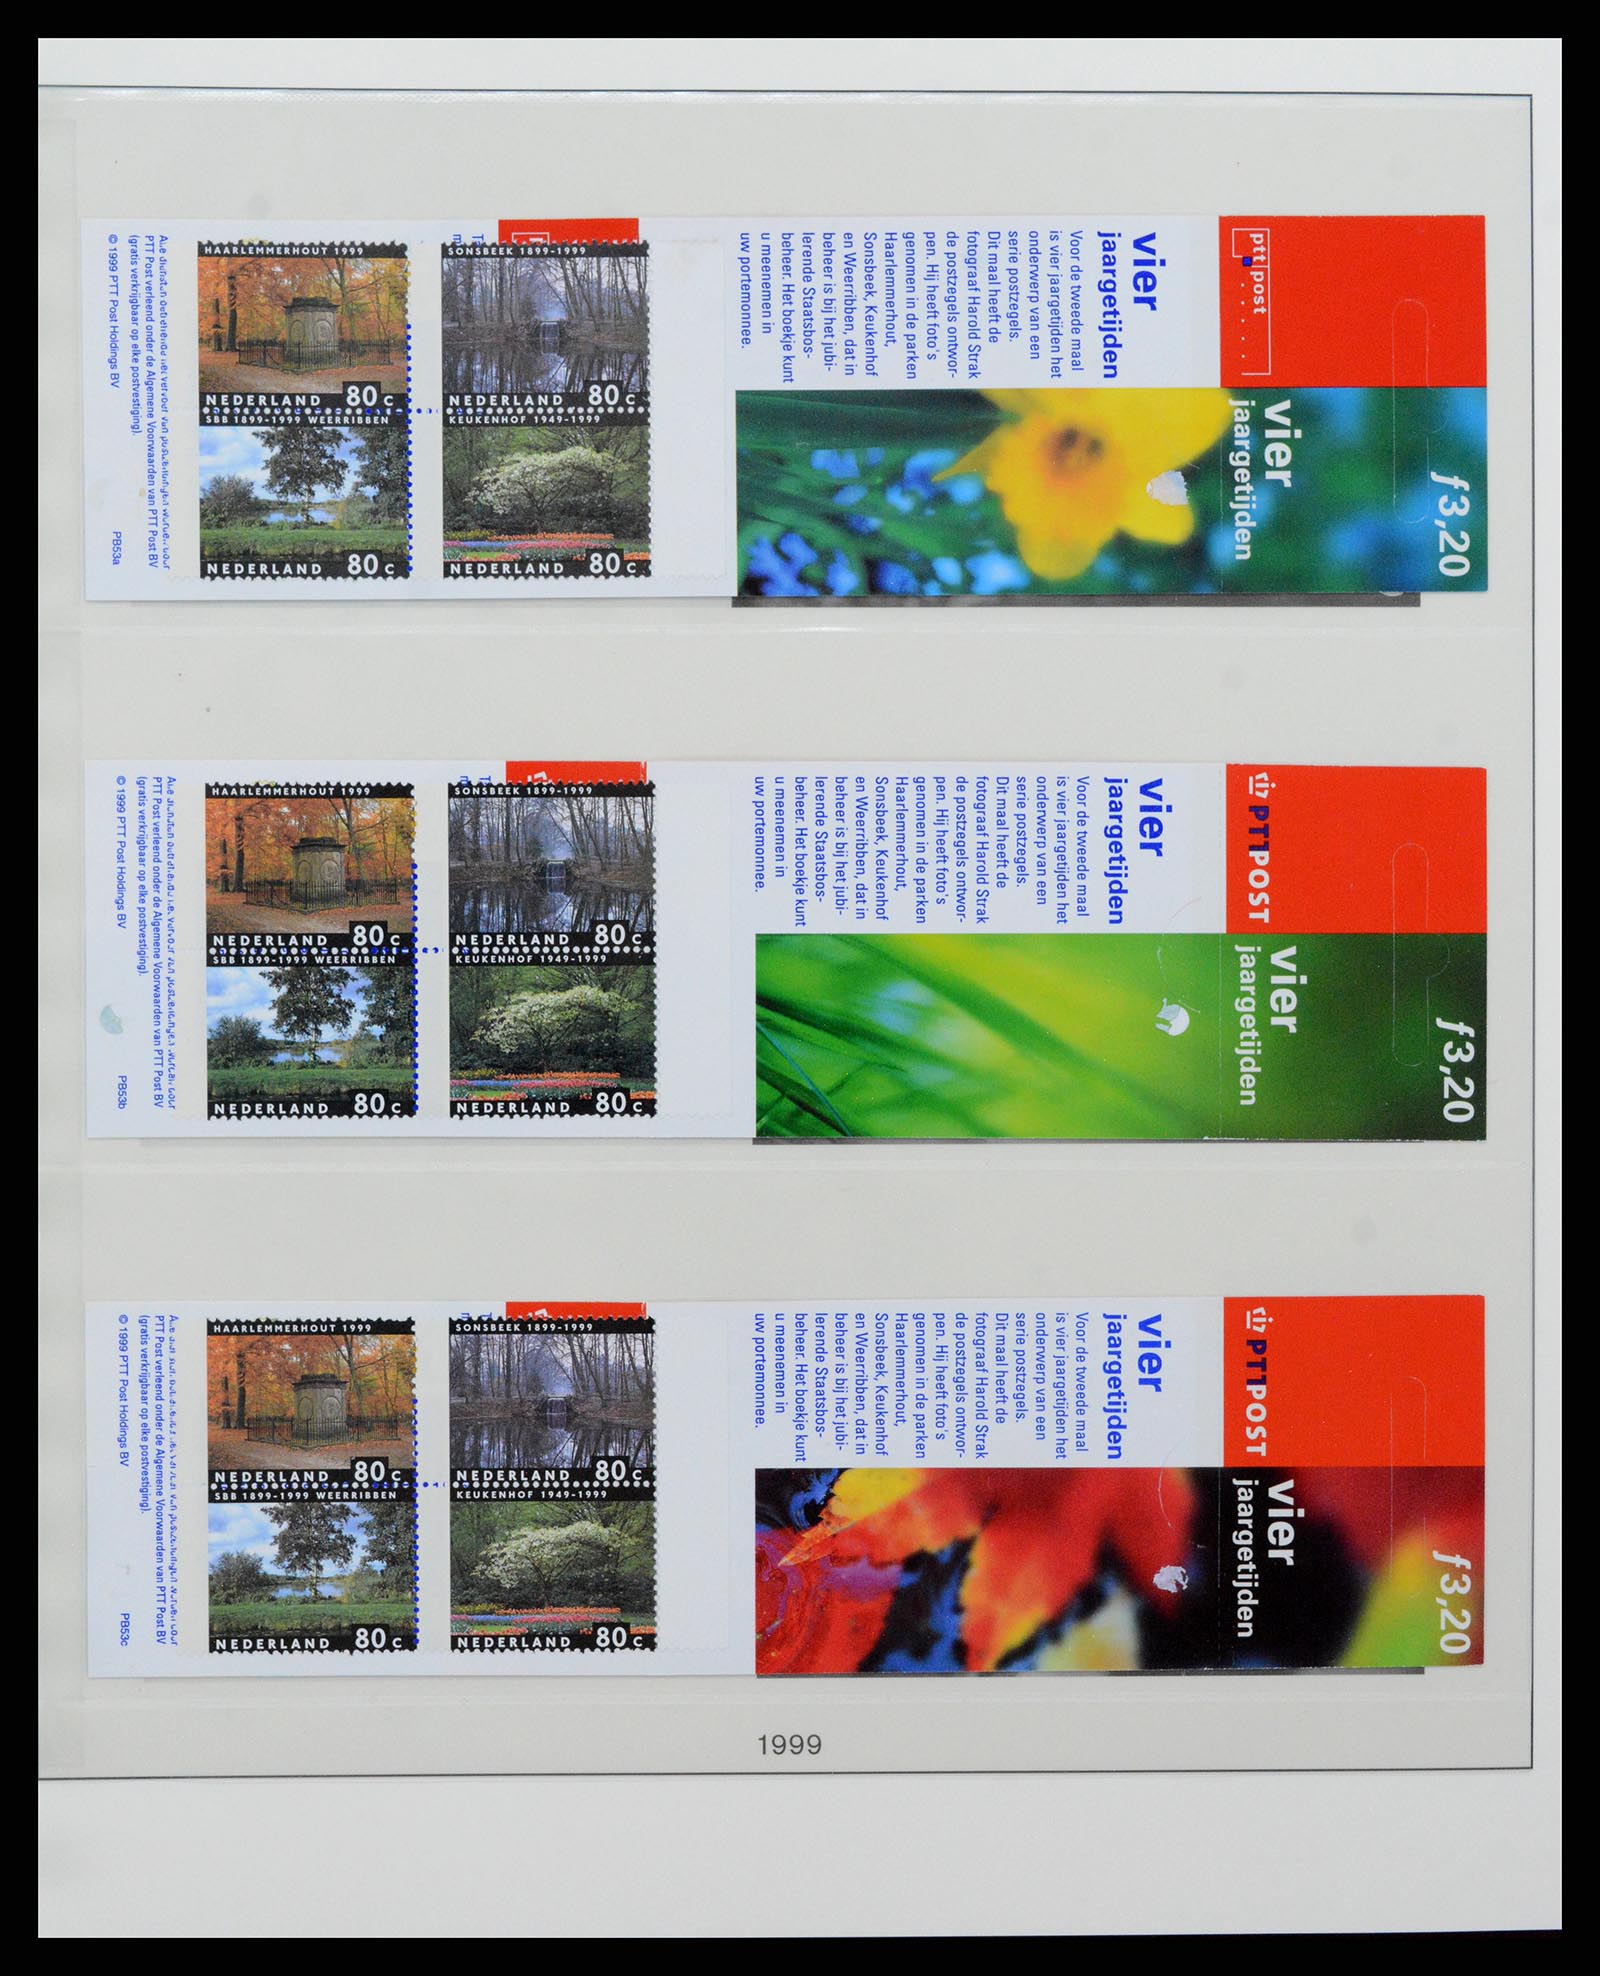 37994 030 - Stamp Collection 37994 Netherlands stampbooklets 1964-2002.